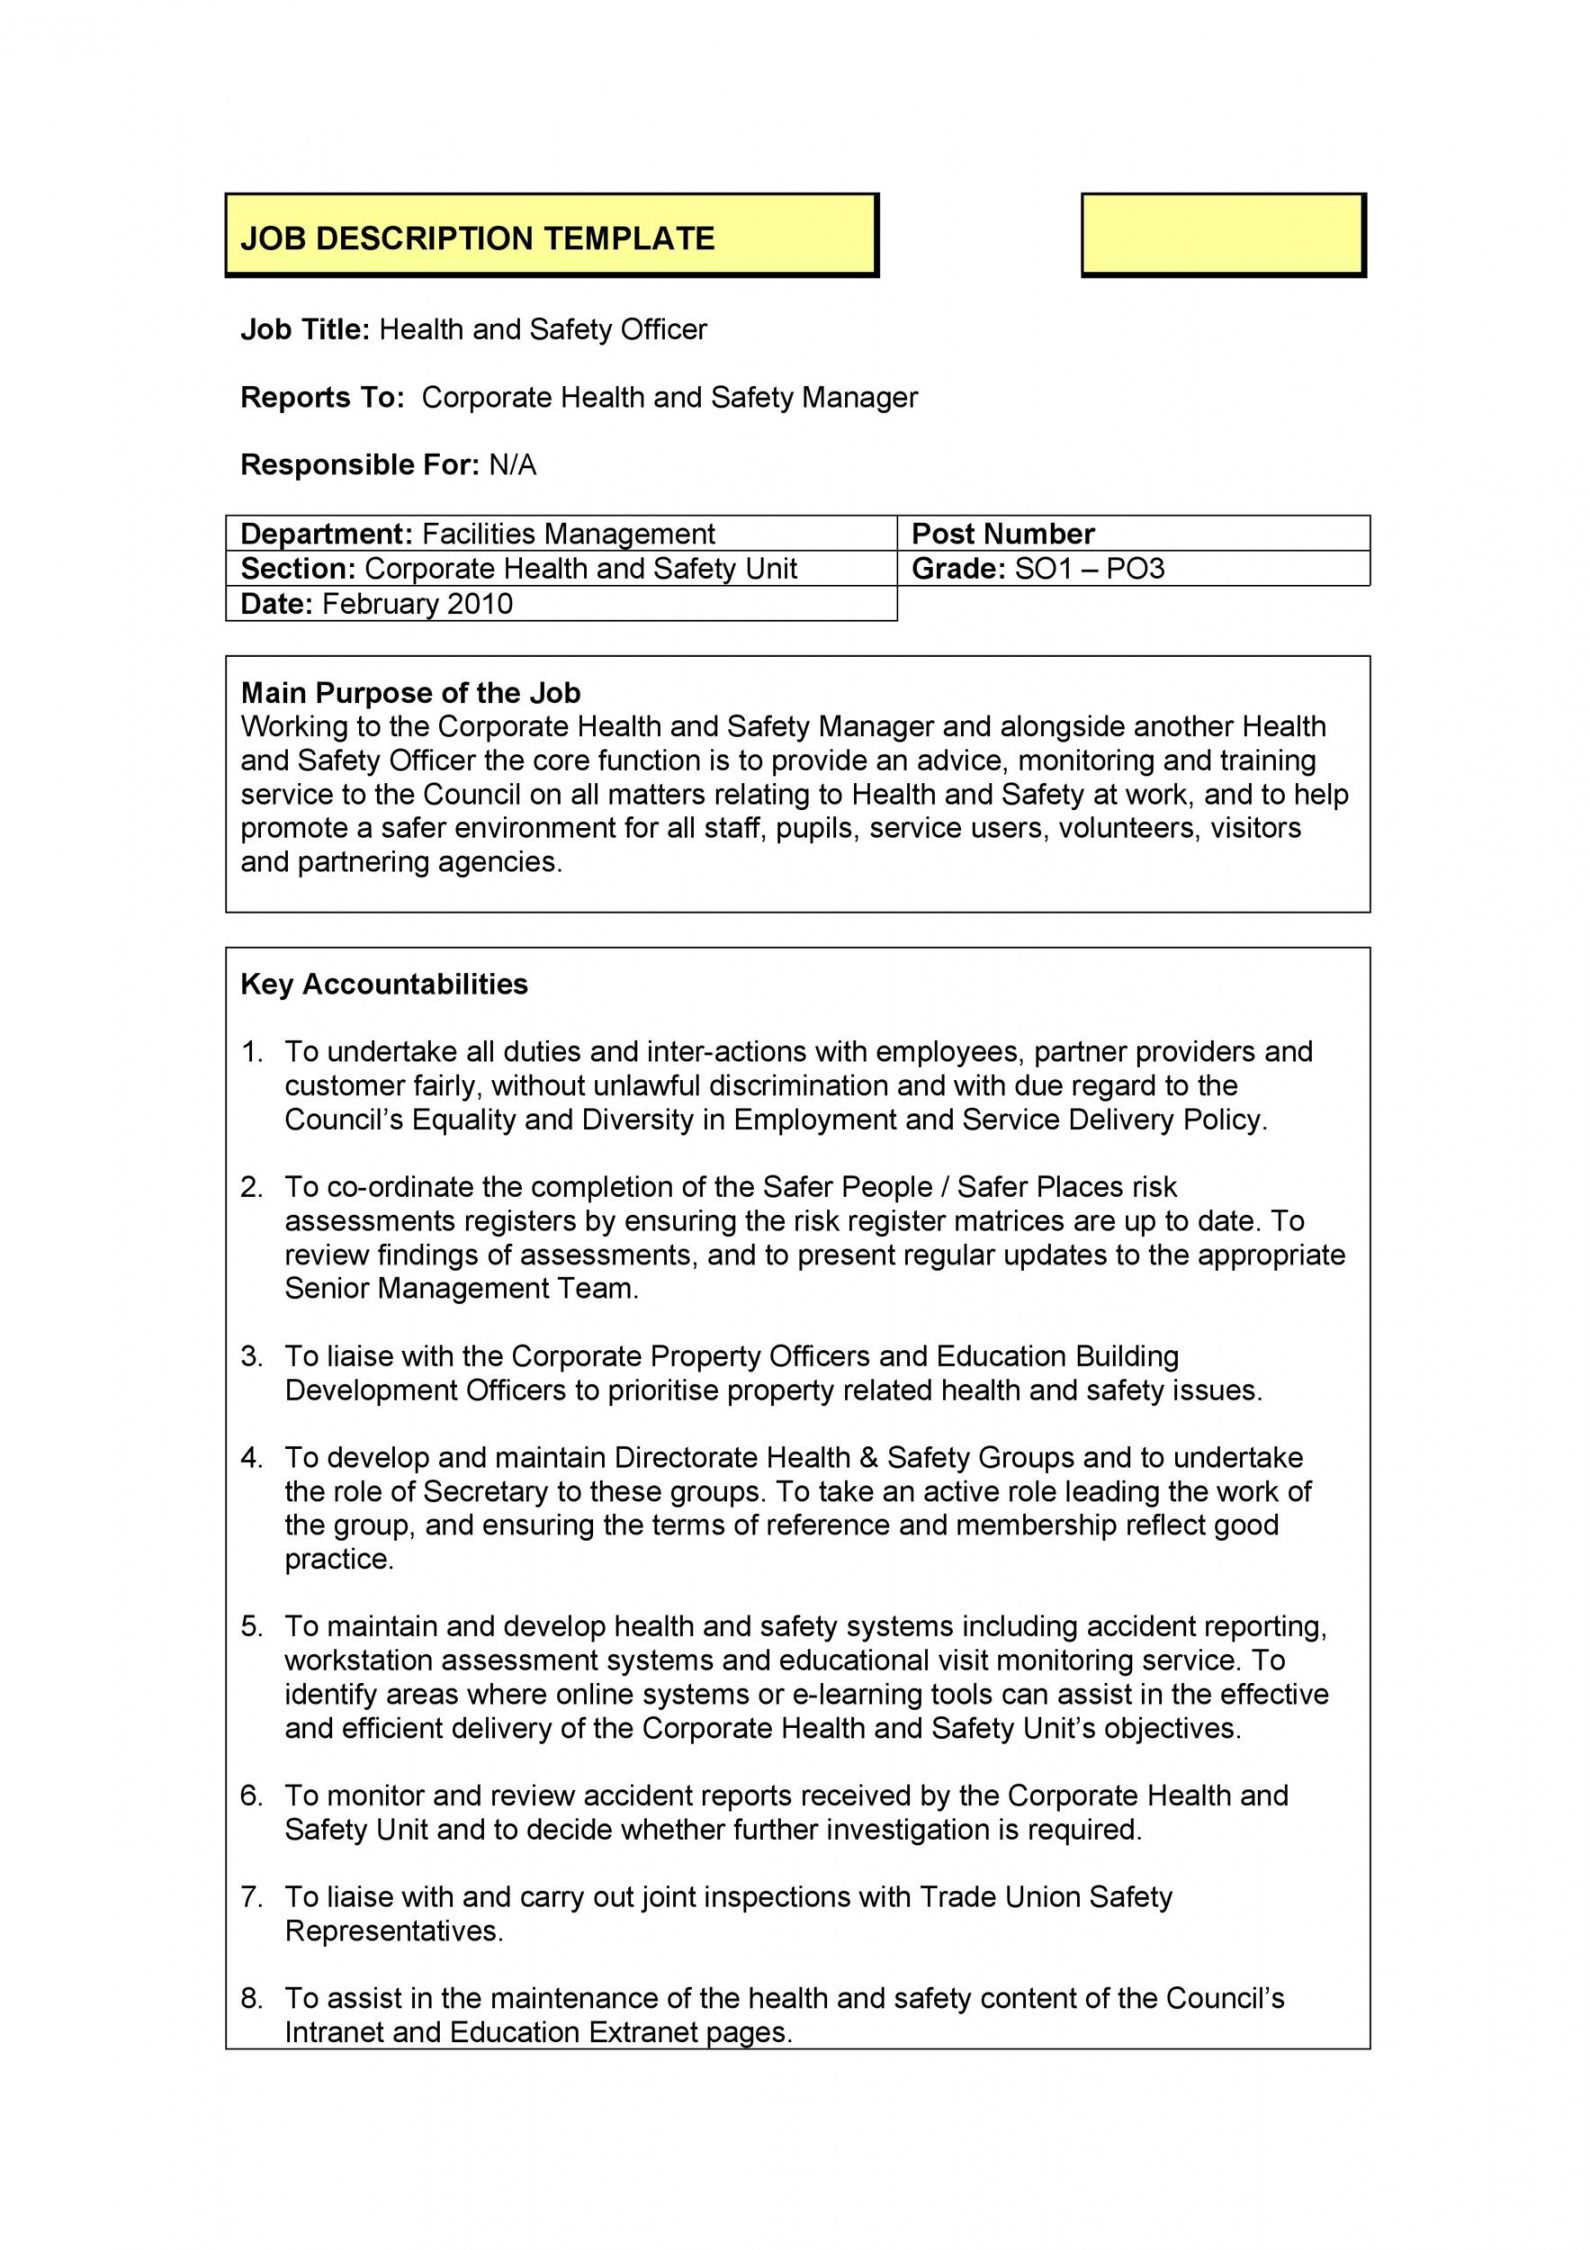 47 job description templates &amp; examples ᐅ templatelab work study job description template doc